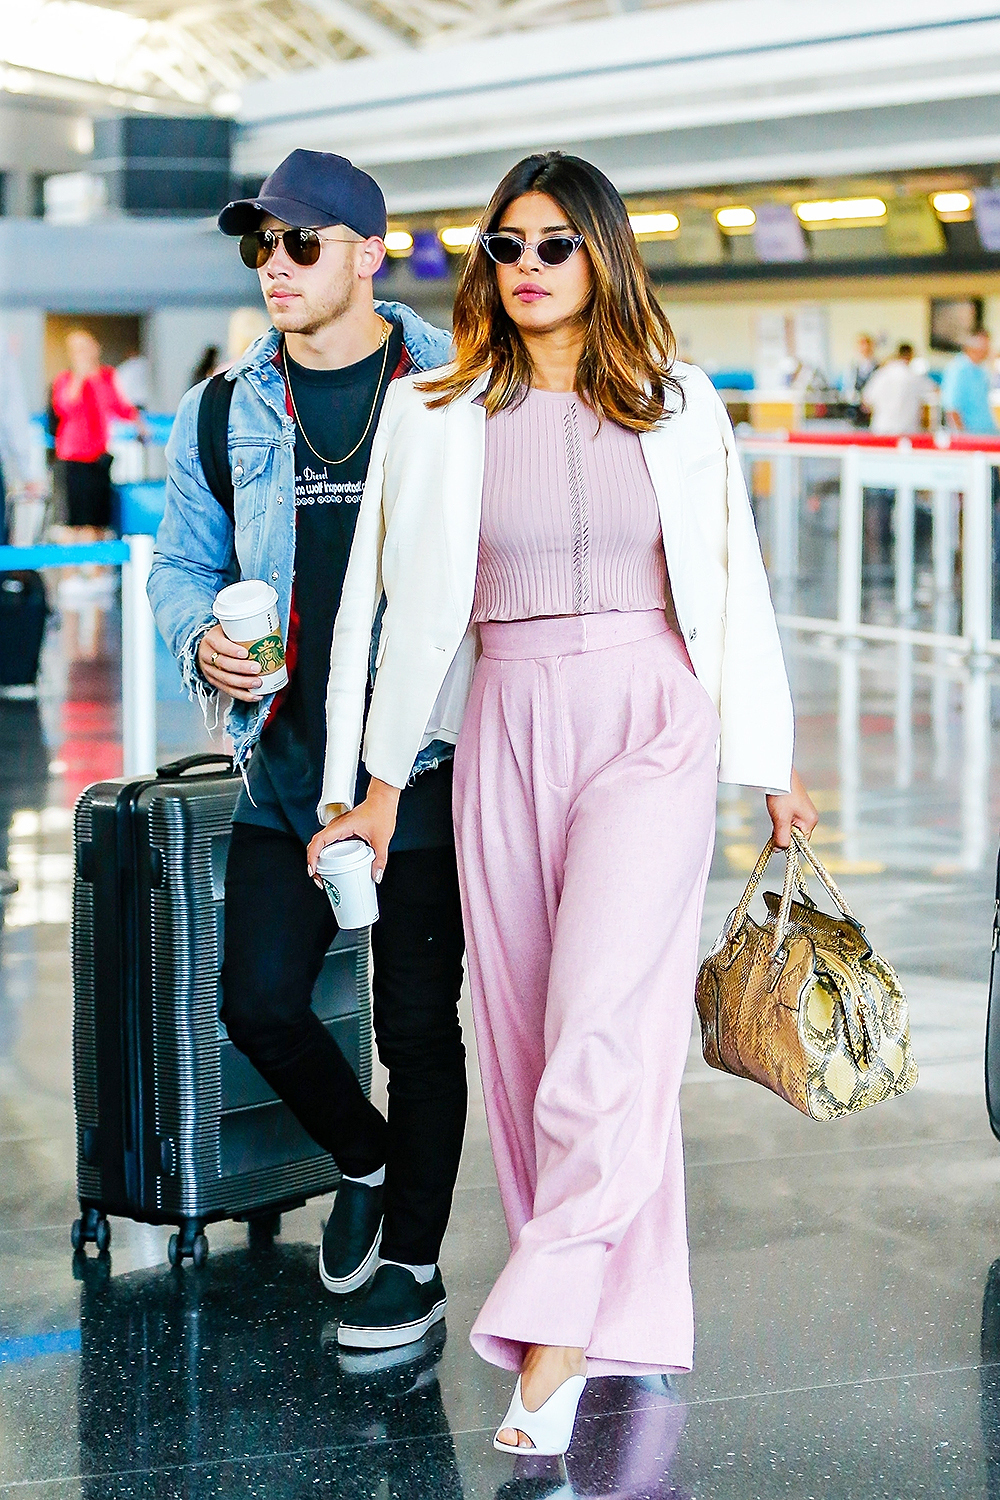 Imita los looks de cita de la pareja de moda: Nick Jonas y Priyanka Chopra